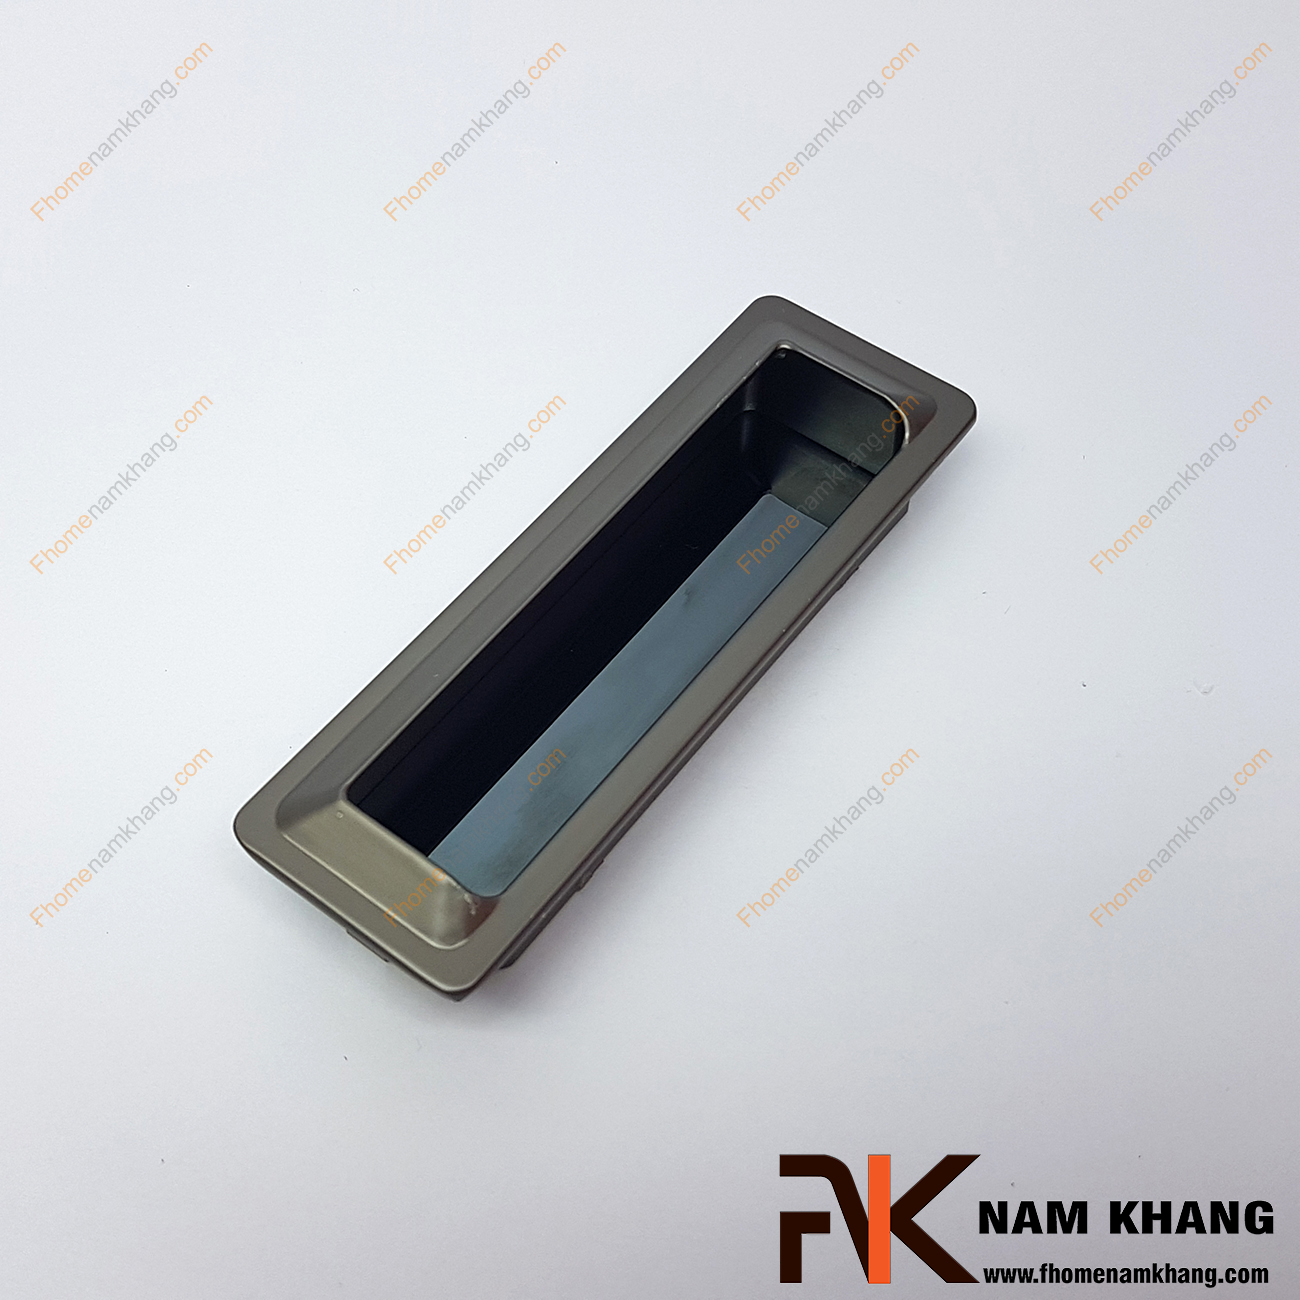 Tay nắm âm tủ màu xám NK301-96D là loại tay nắm chuyên dùng cho các loại tủ đặt ở những nơi có không gian hạn chế hoặc dùng để nâng cao tính thẫm mỹ của sản phẩm